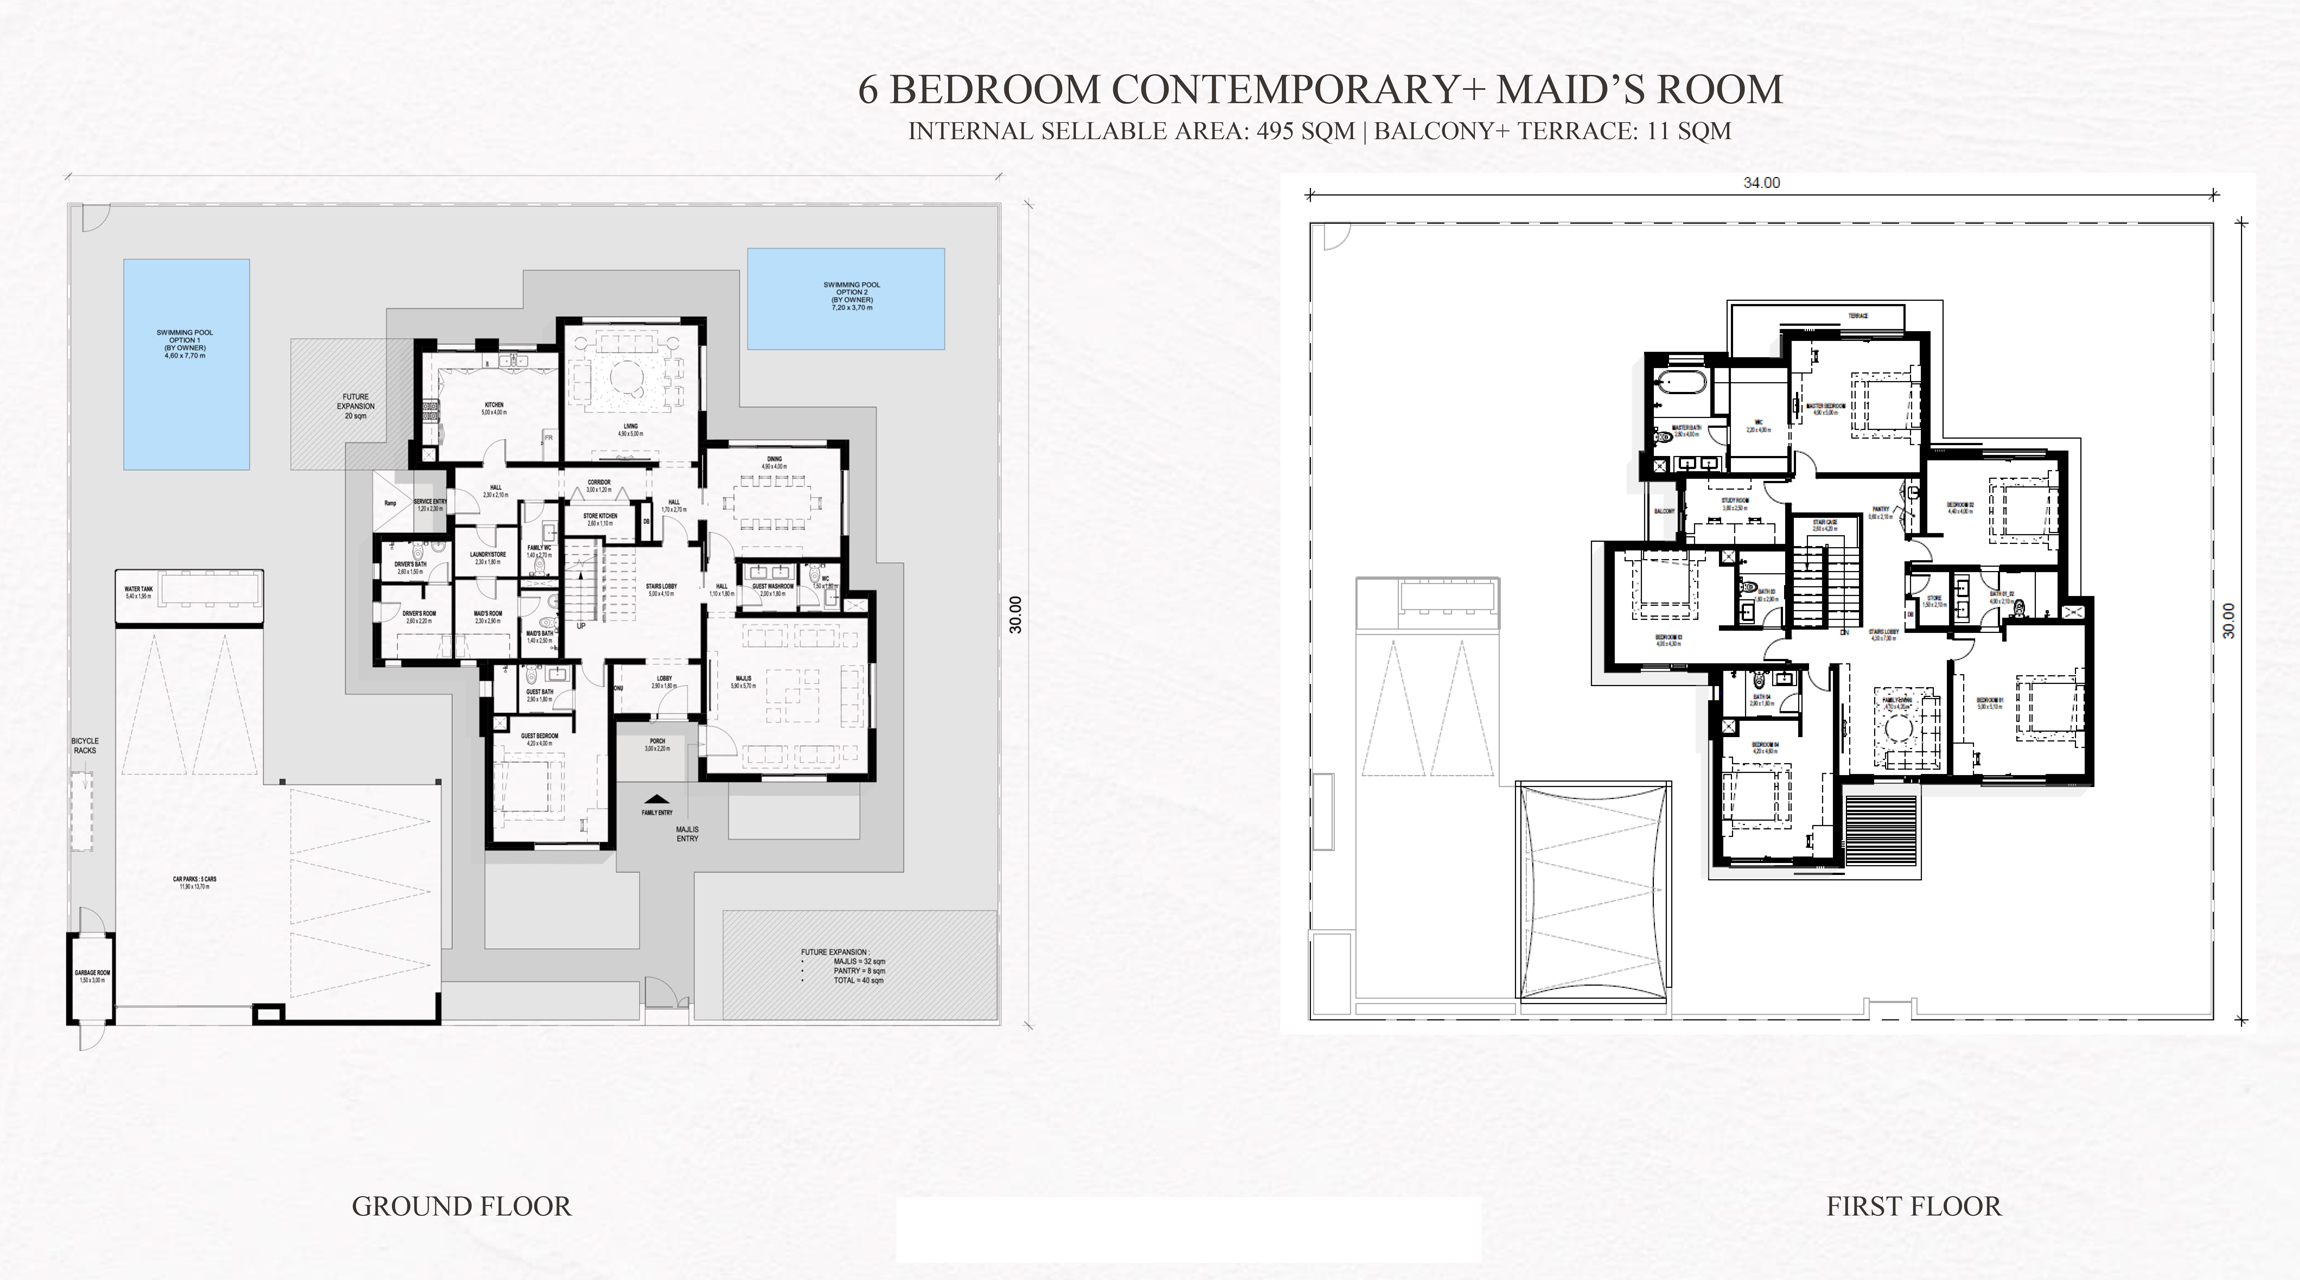 6 Bedroom, Contemporary